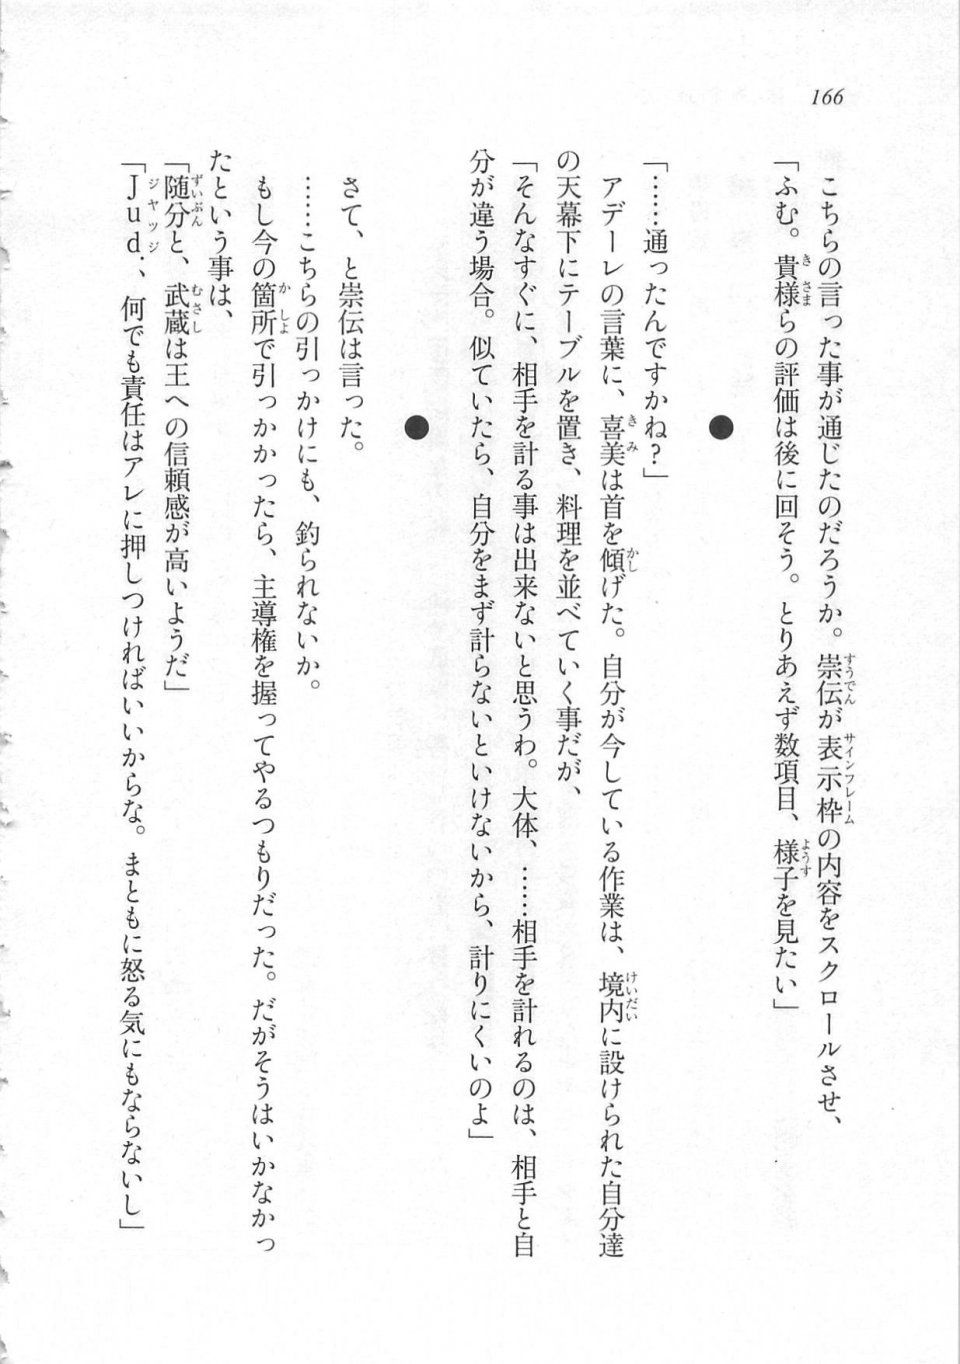 Kyoukai Senjou no Horizon LN Sidestory Vol 3 - Photo #170